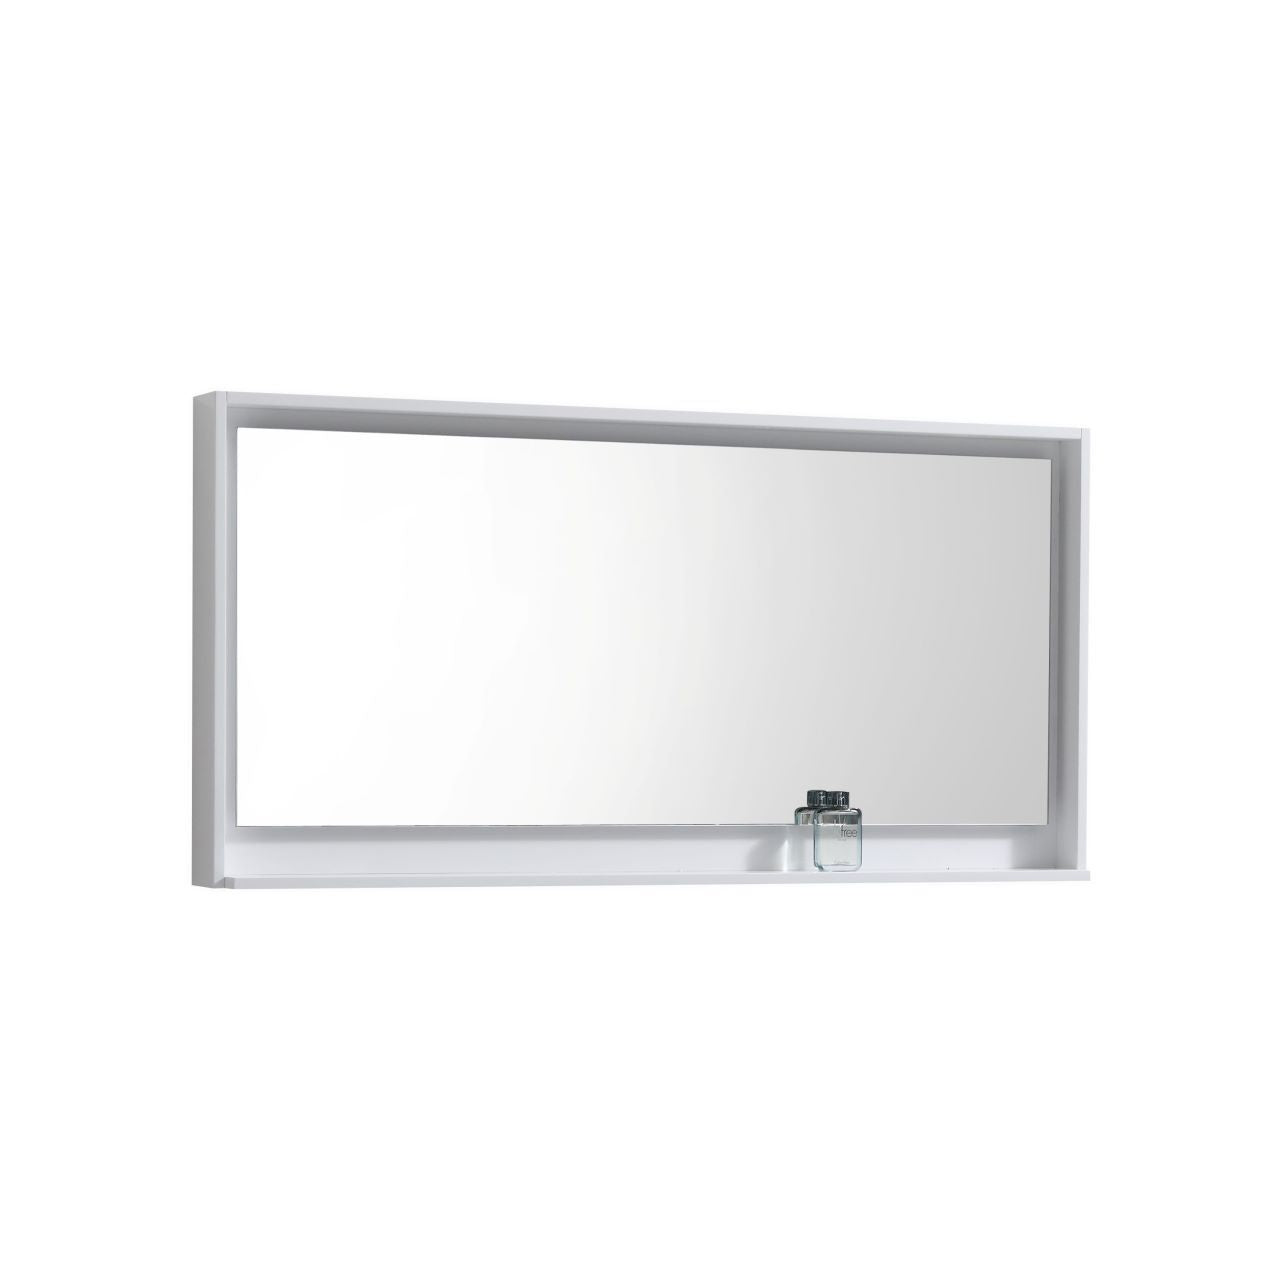 Bosco 60" Framed Mirror With Shelve - Bhdepot 